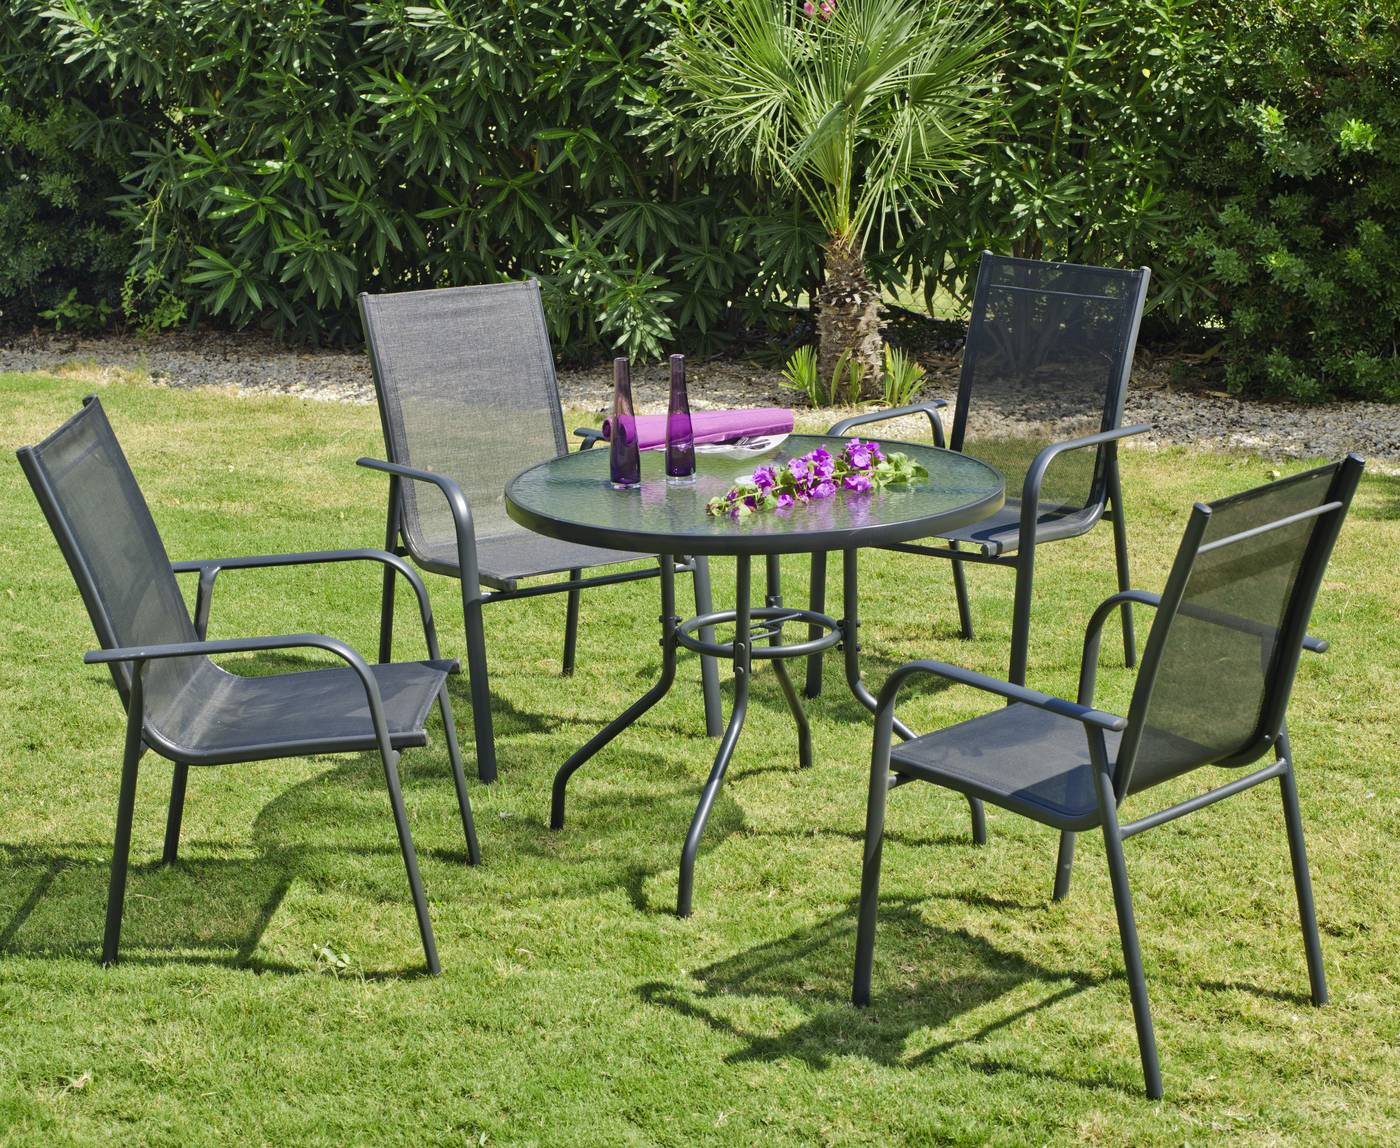 Conjunto de aluminio color antracita: mesa redonda con tablero de 90 cm.  de cristal templado + 4 sillones de aluminio y textilen